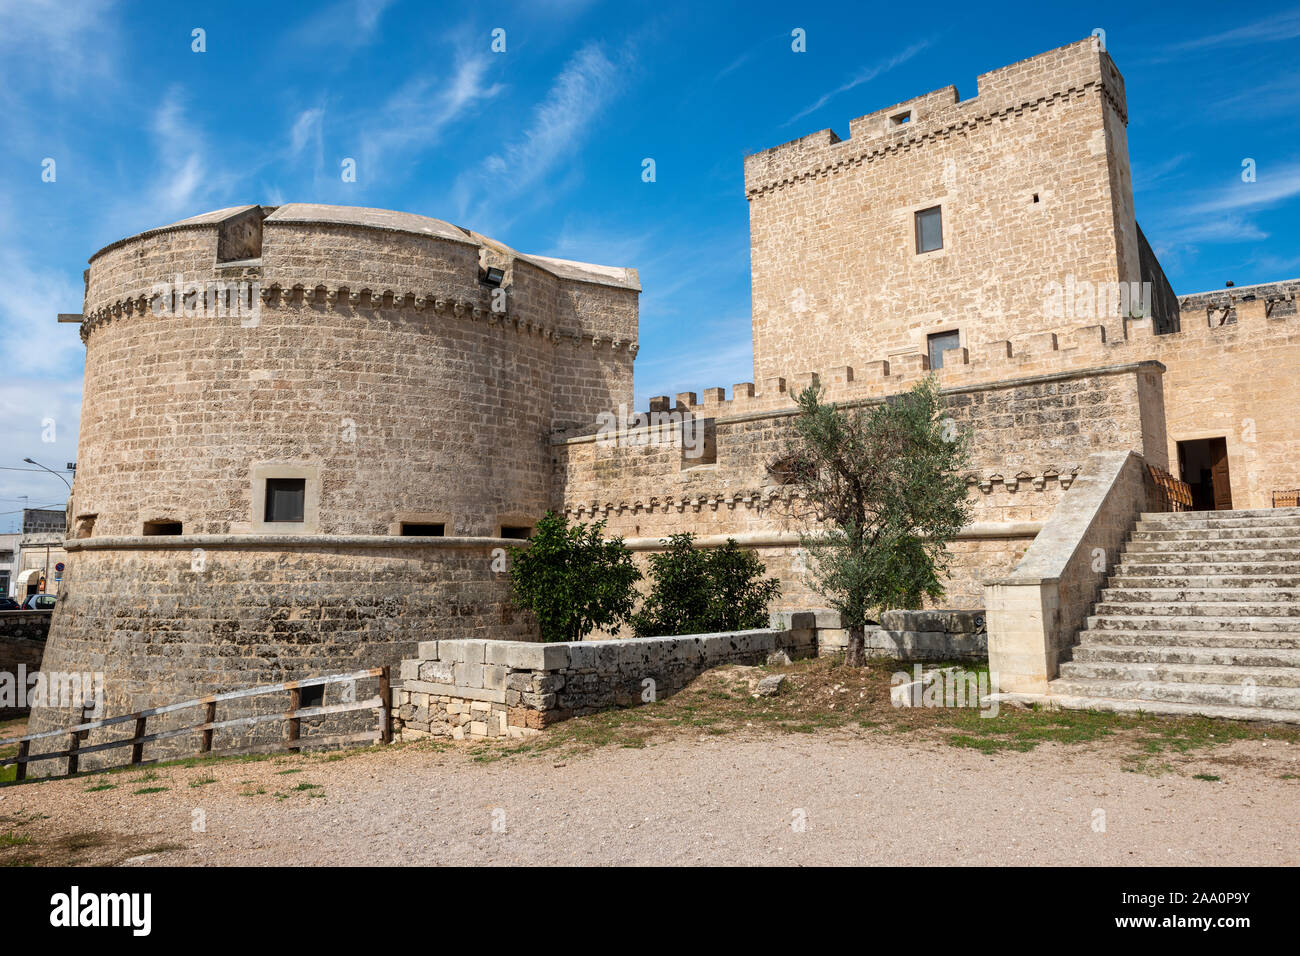 Las paredes externas y la torre visto desde el foso del castillo de' Monti, en Corigliano d'Otranto, Apulia (Puglia) en el sur de Italia Foto de stock